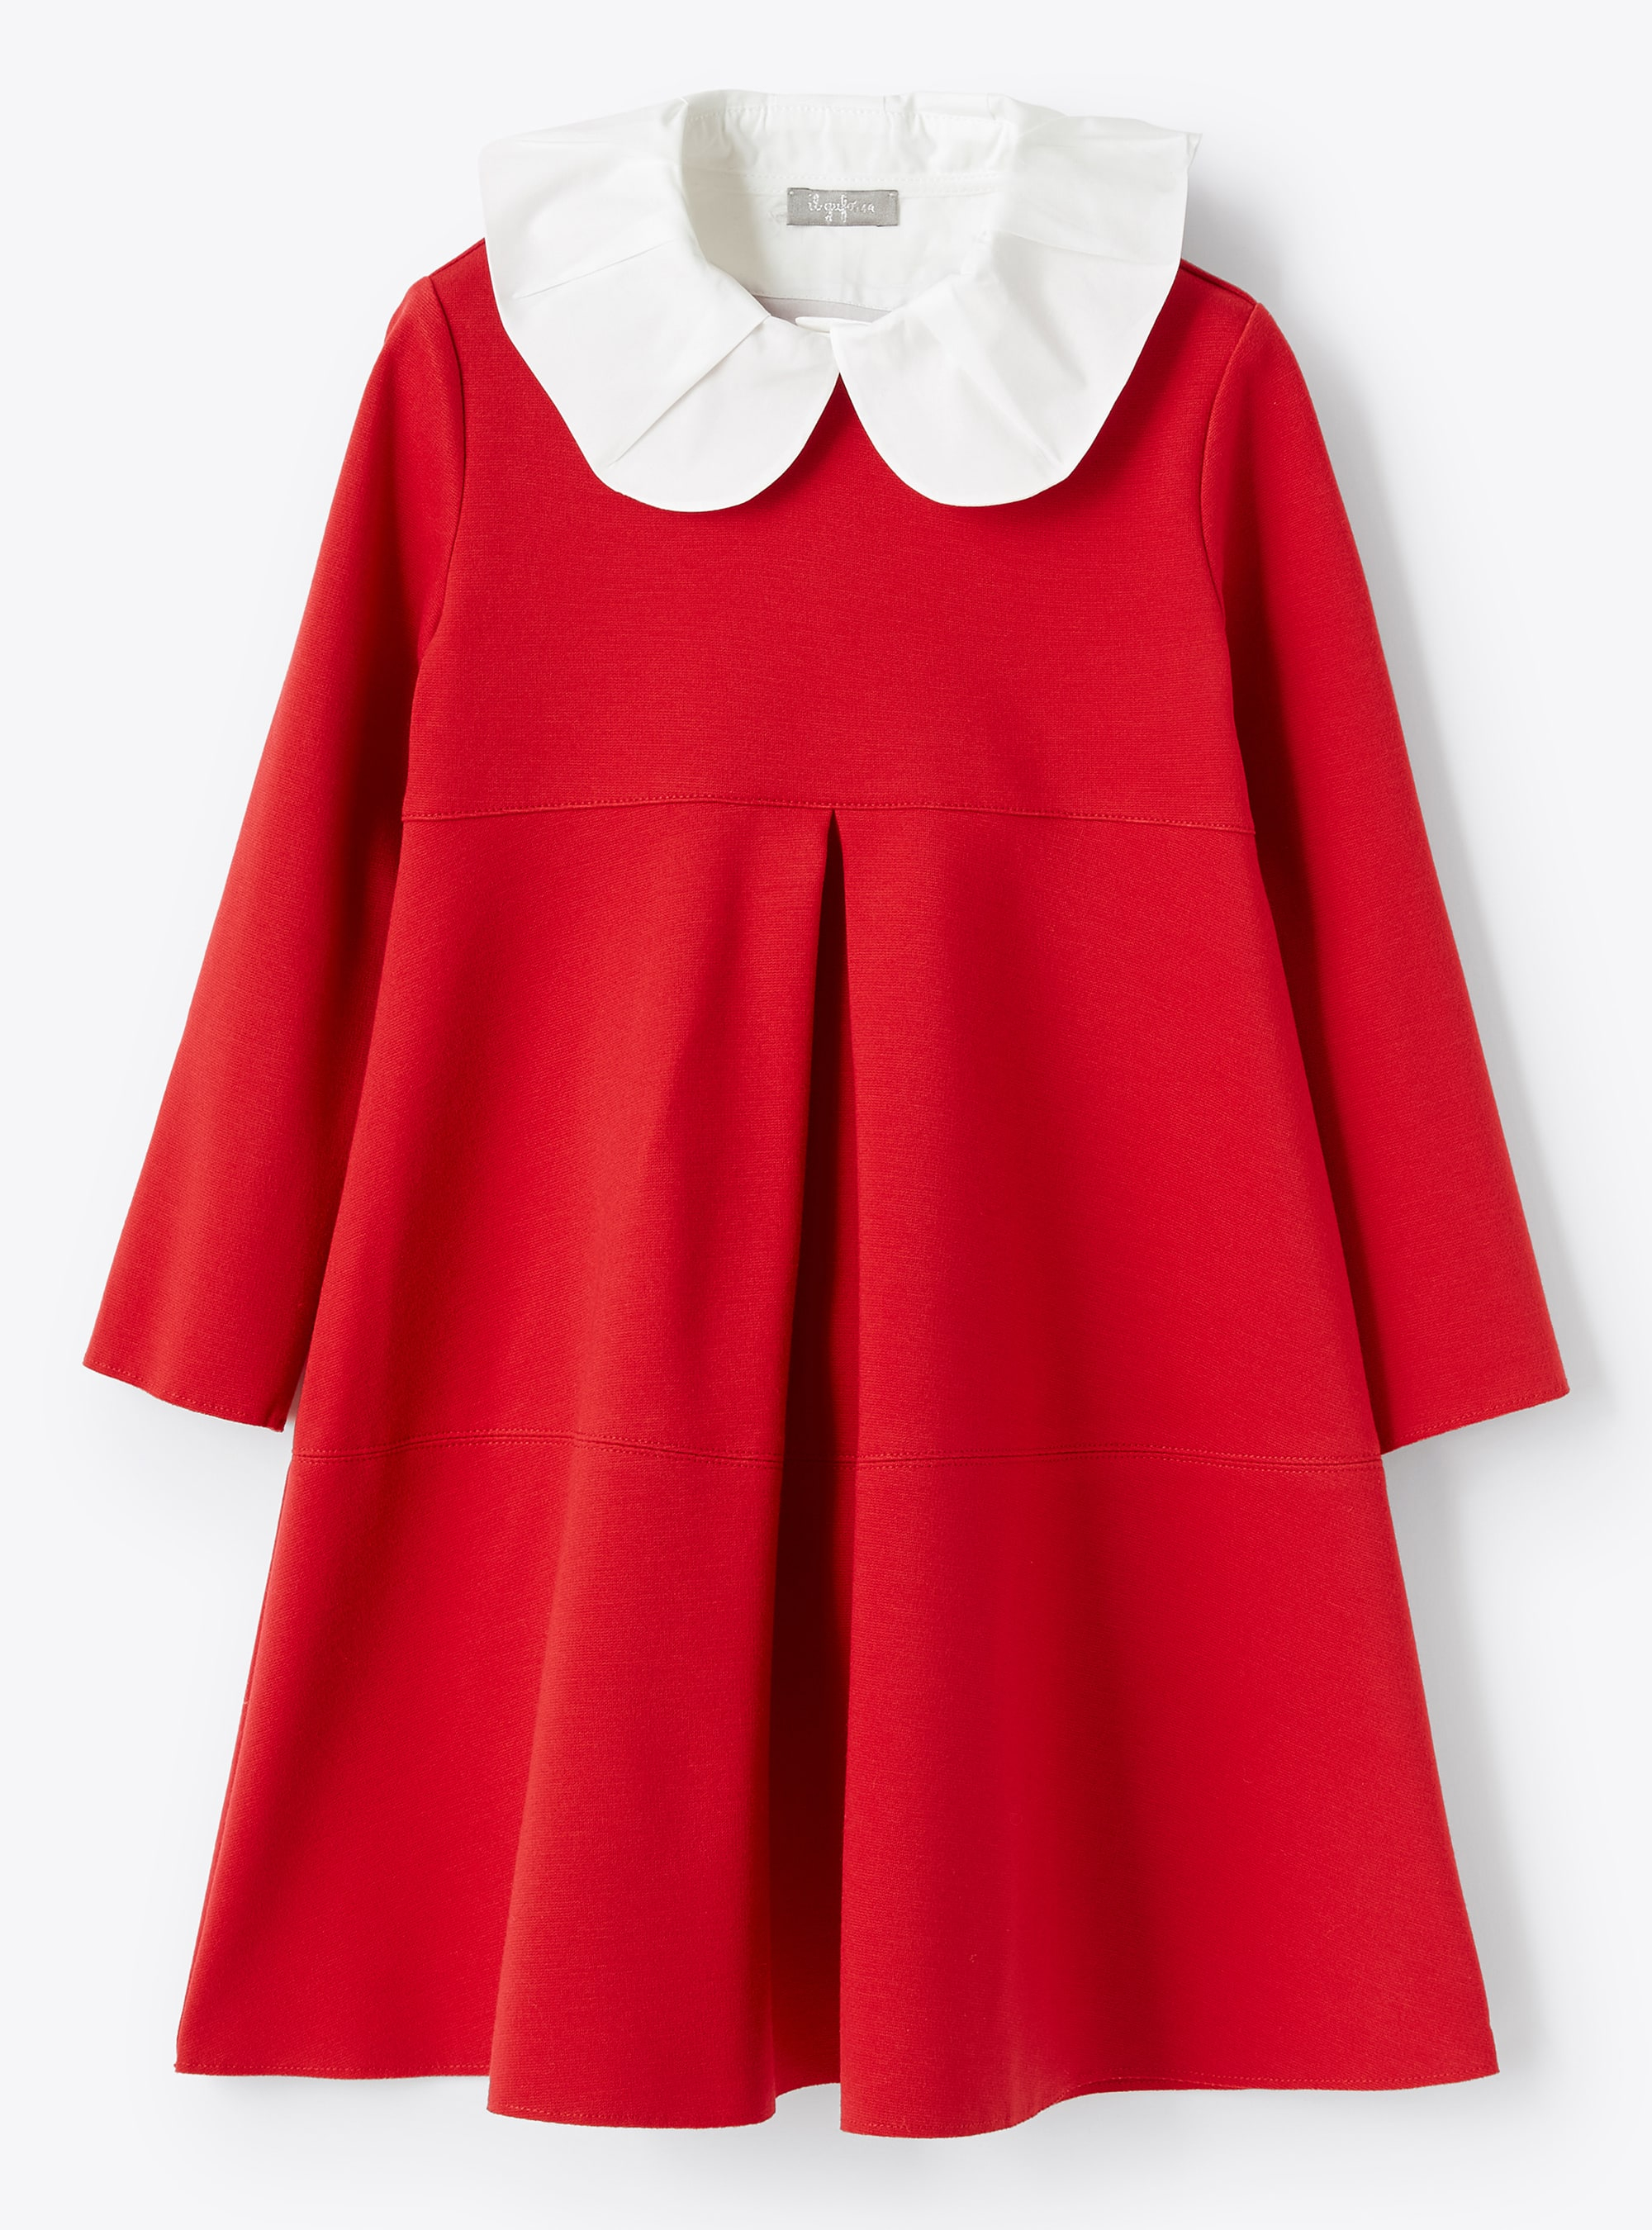 Box pleat red dress - Red | Il Gufo